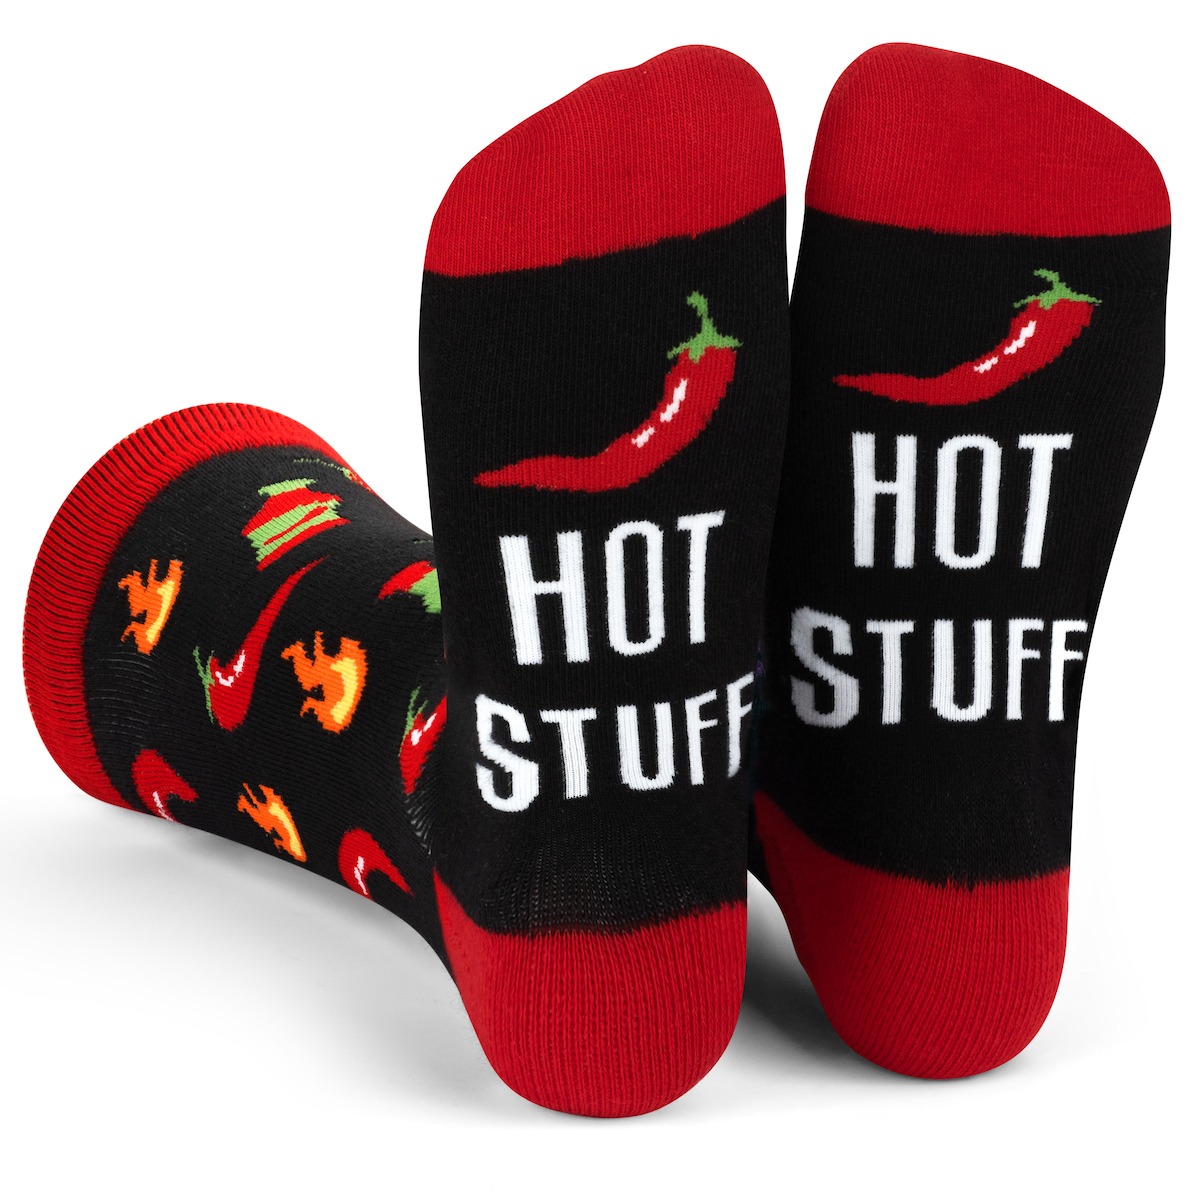 Lavley - Hot Stuff Chili Pepper Socks 336